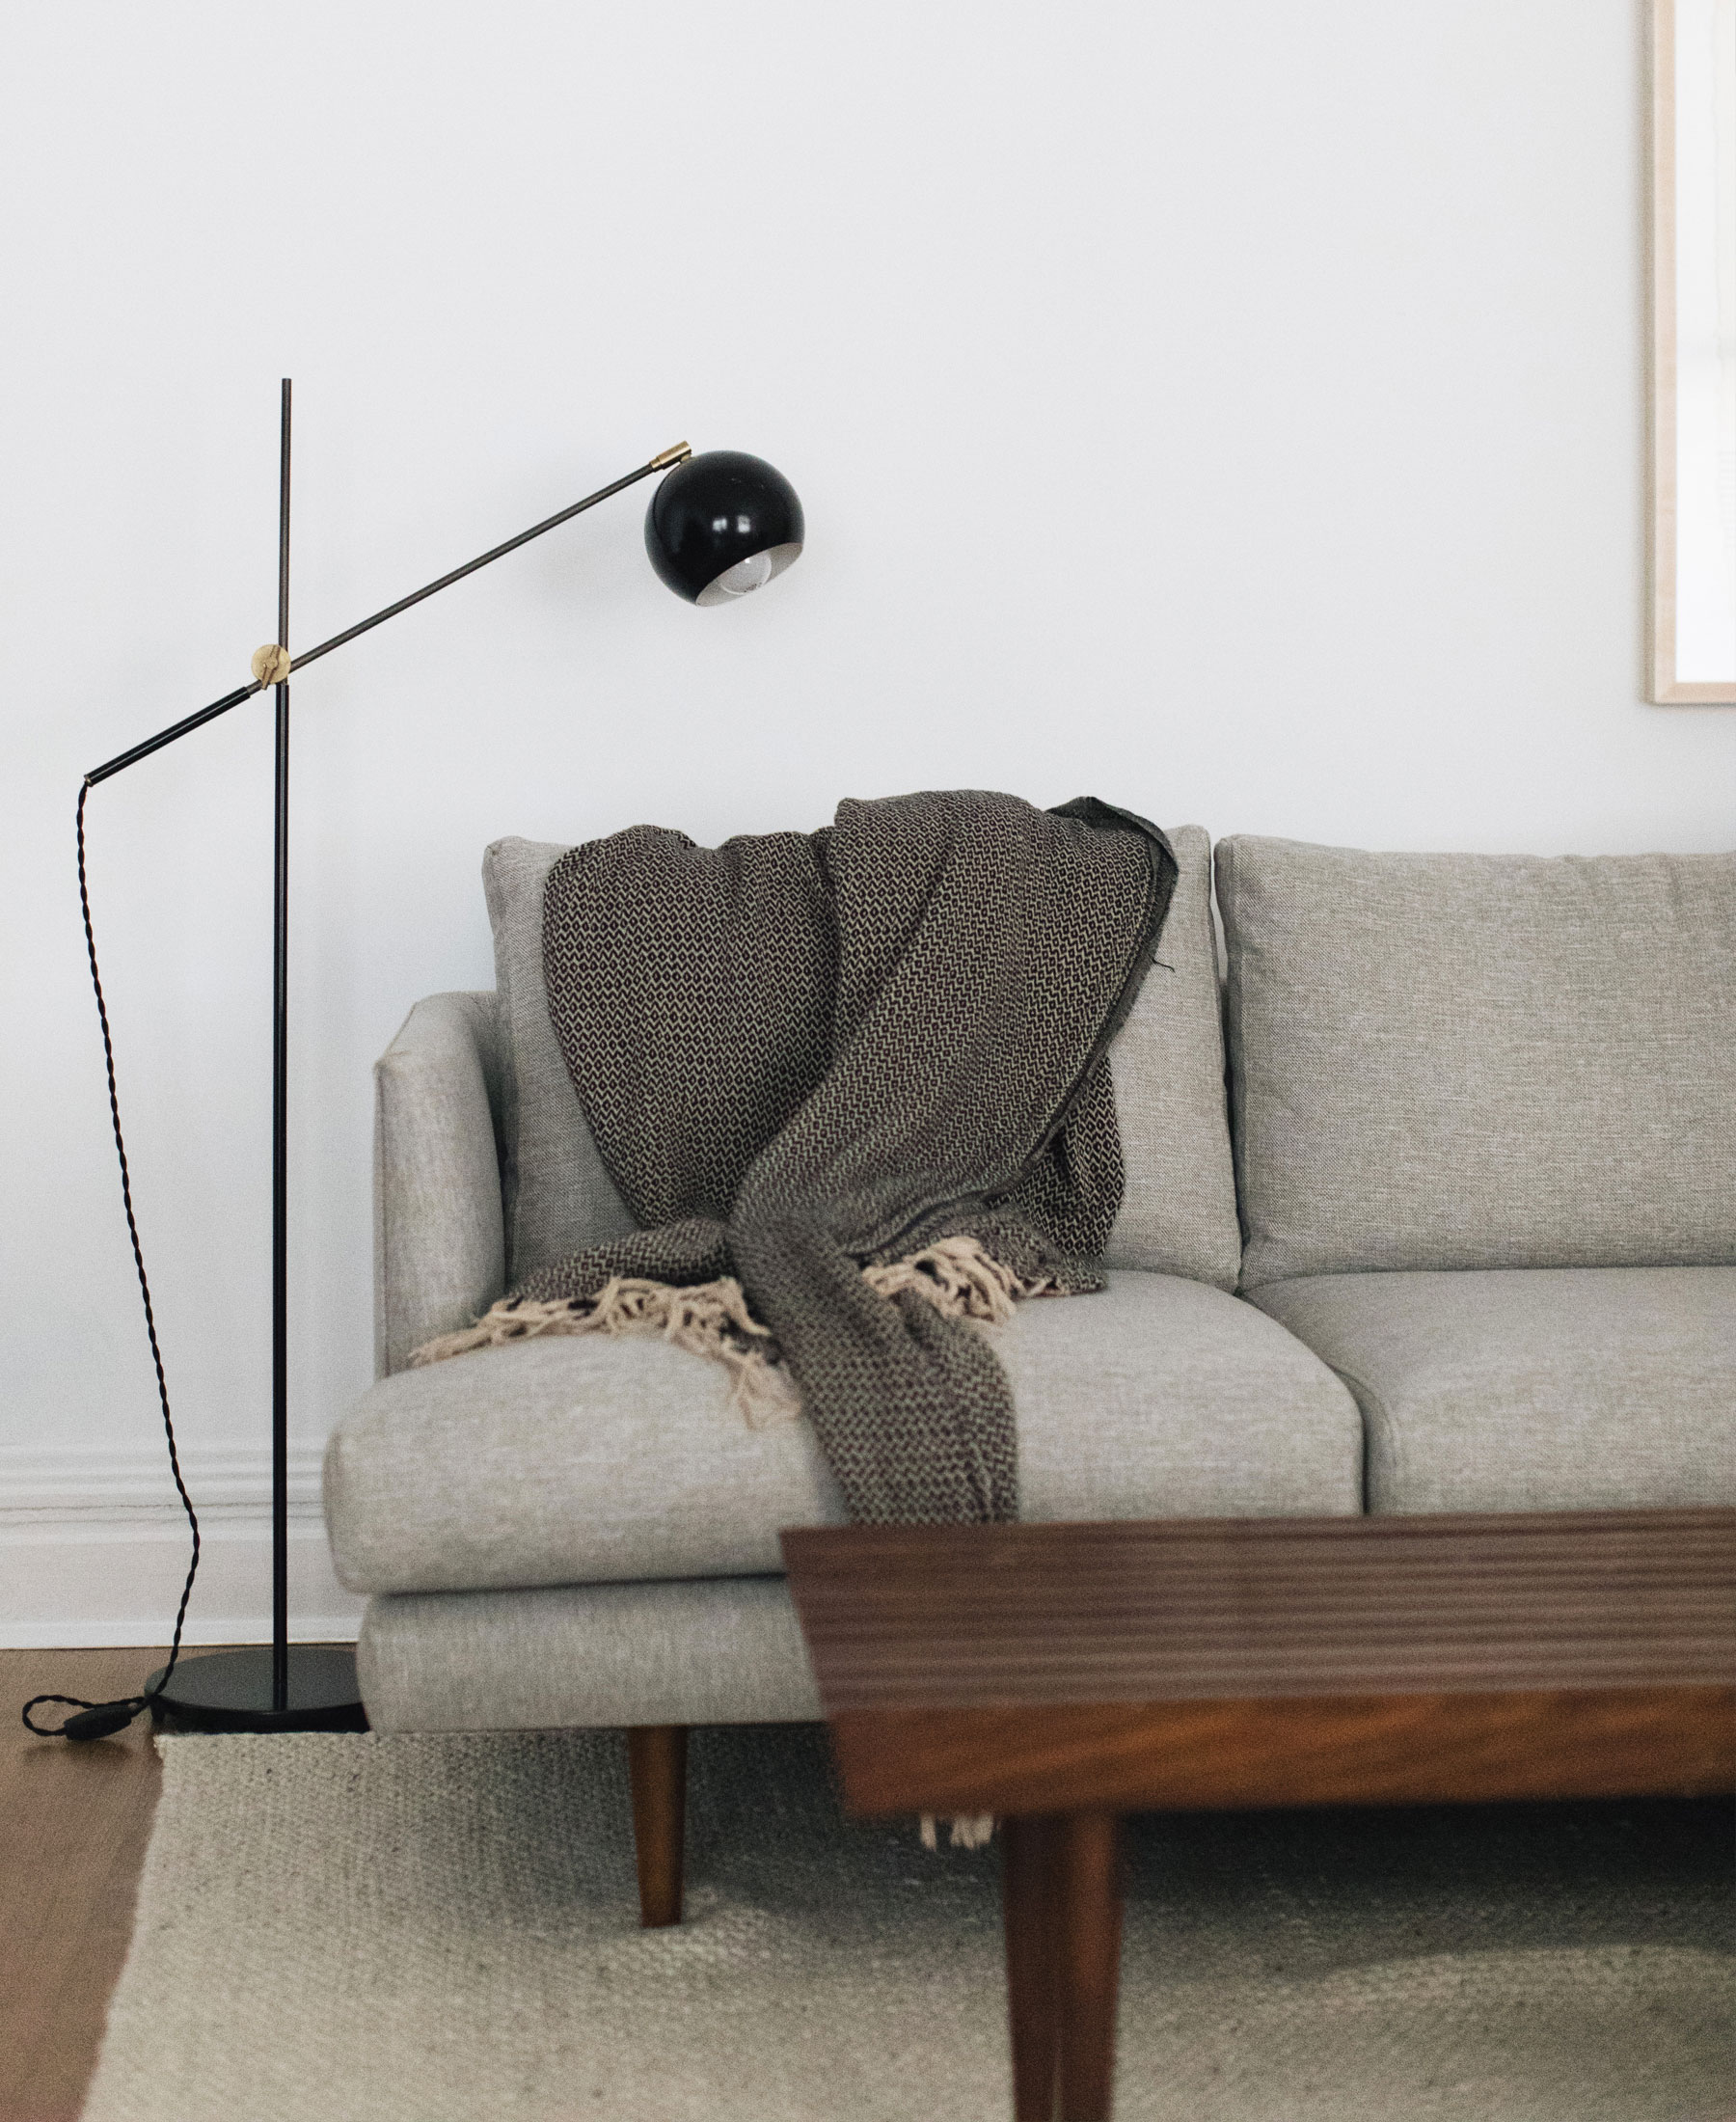 Angular mid-century modern lighting and a gray sofa.